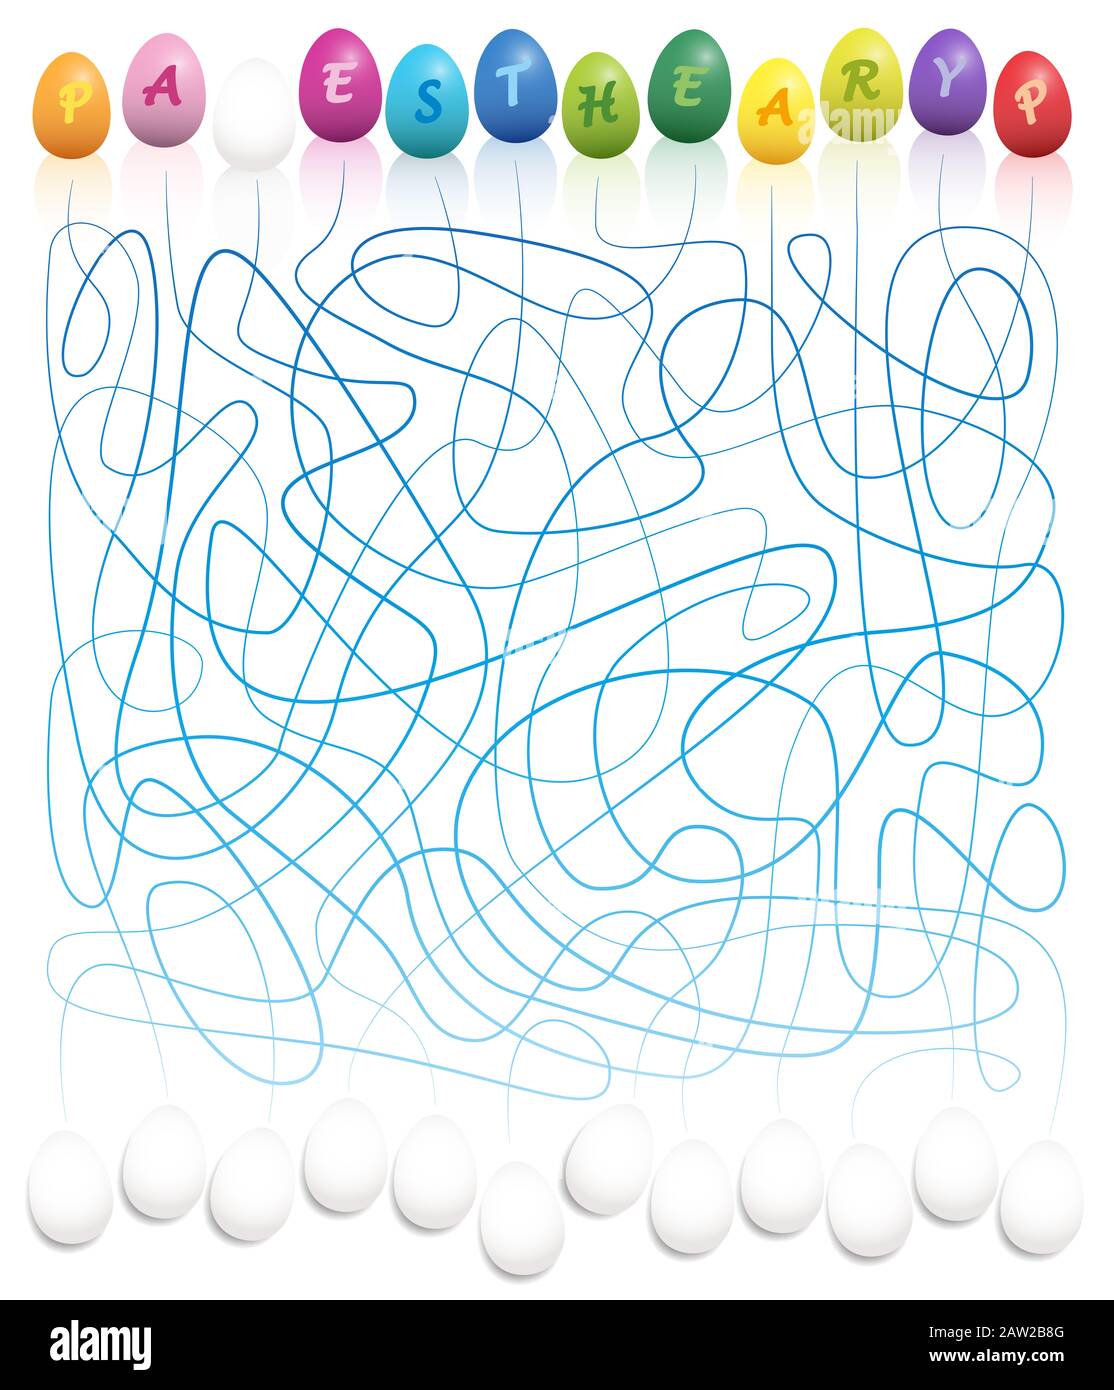 Ostereier-Labyrinth - verbinden Sie die farbigen ostereierbriefe mit den weißen Eiern, um FROHE OSTERN zu schreiben. Lustige Labyrinthspiele für Kinder. Stockfoto